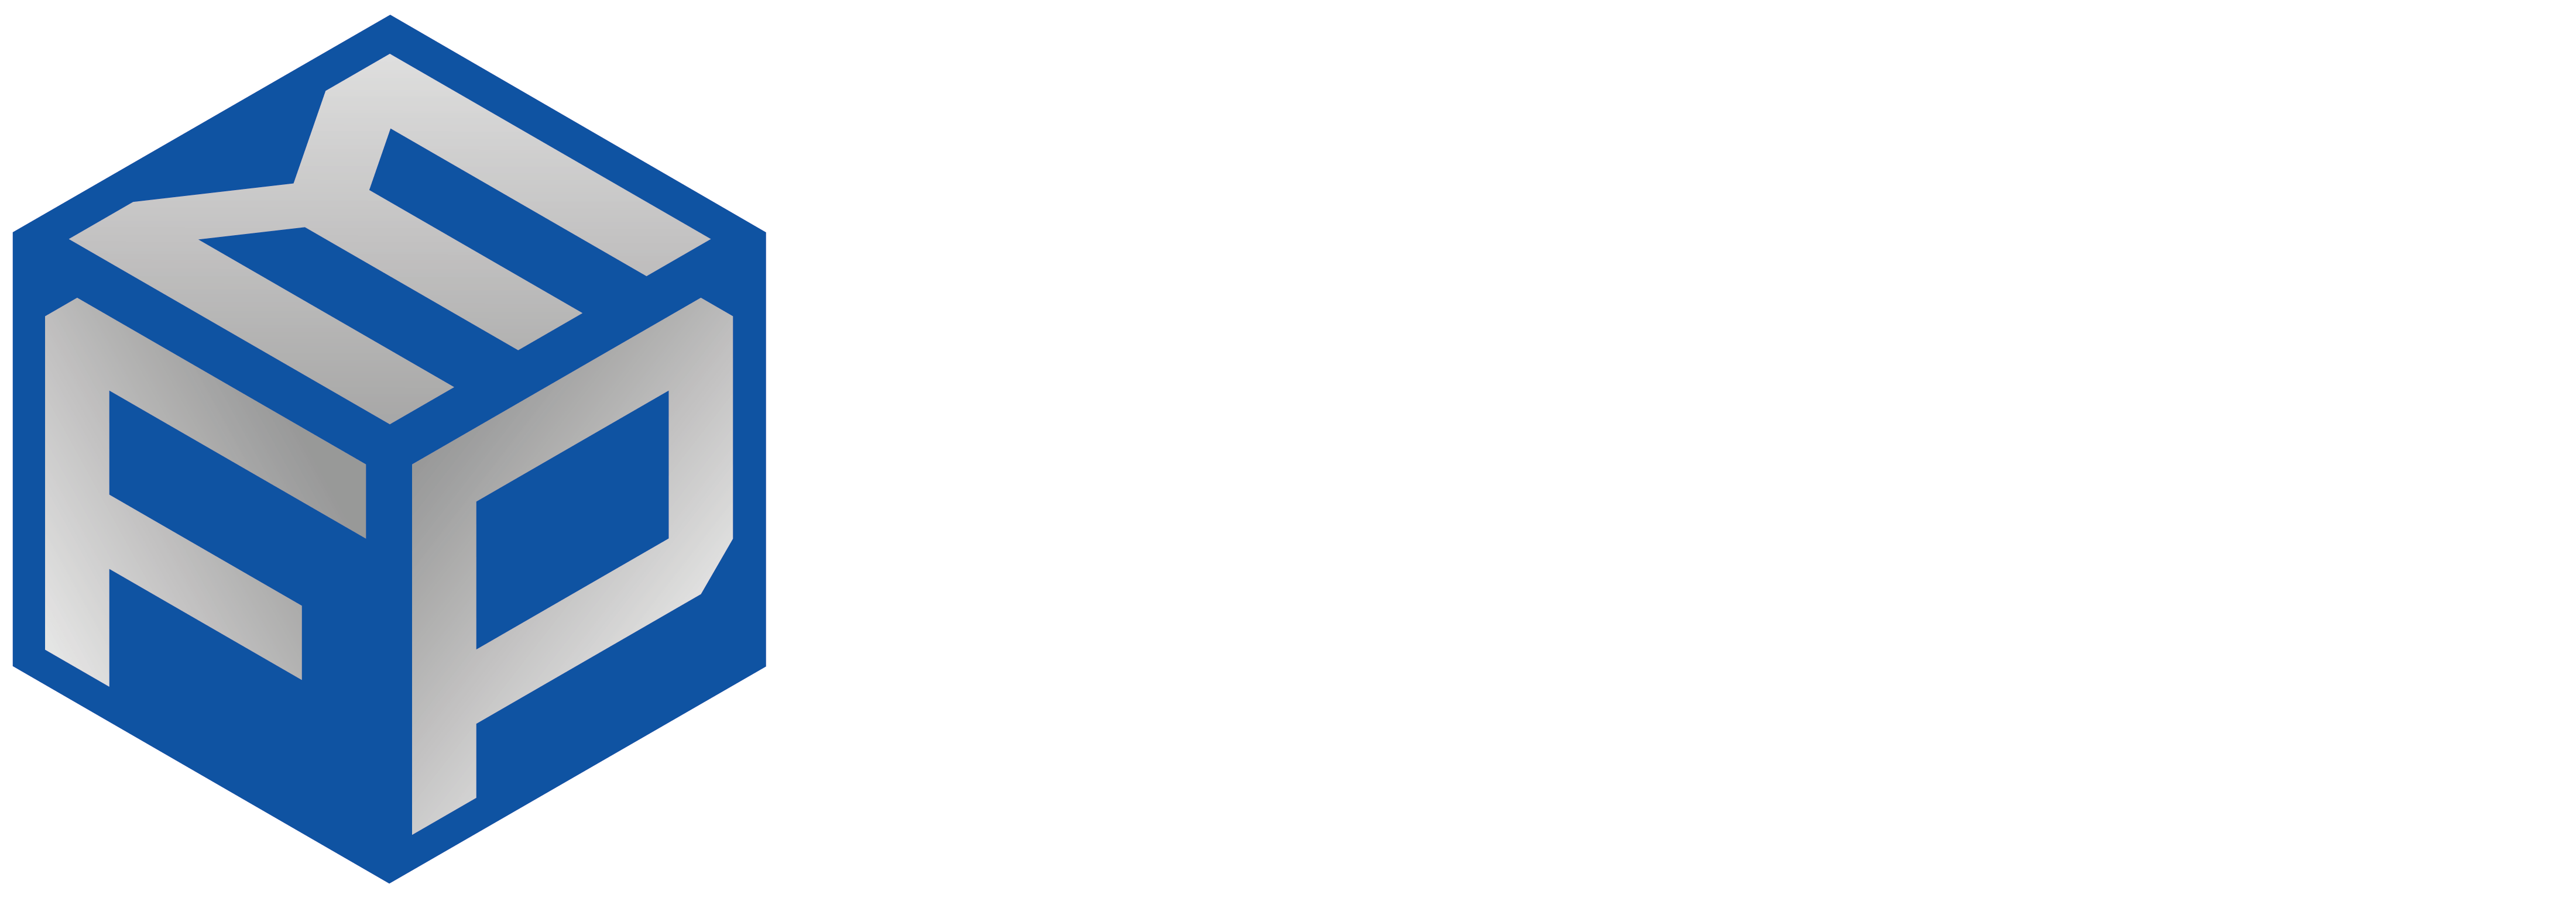 Marcol Logo